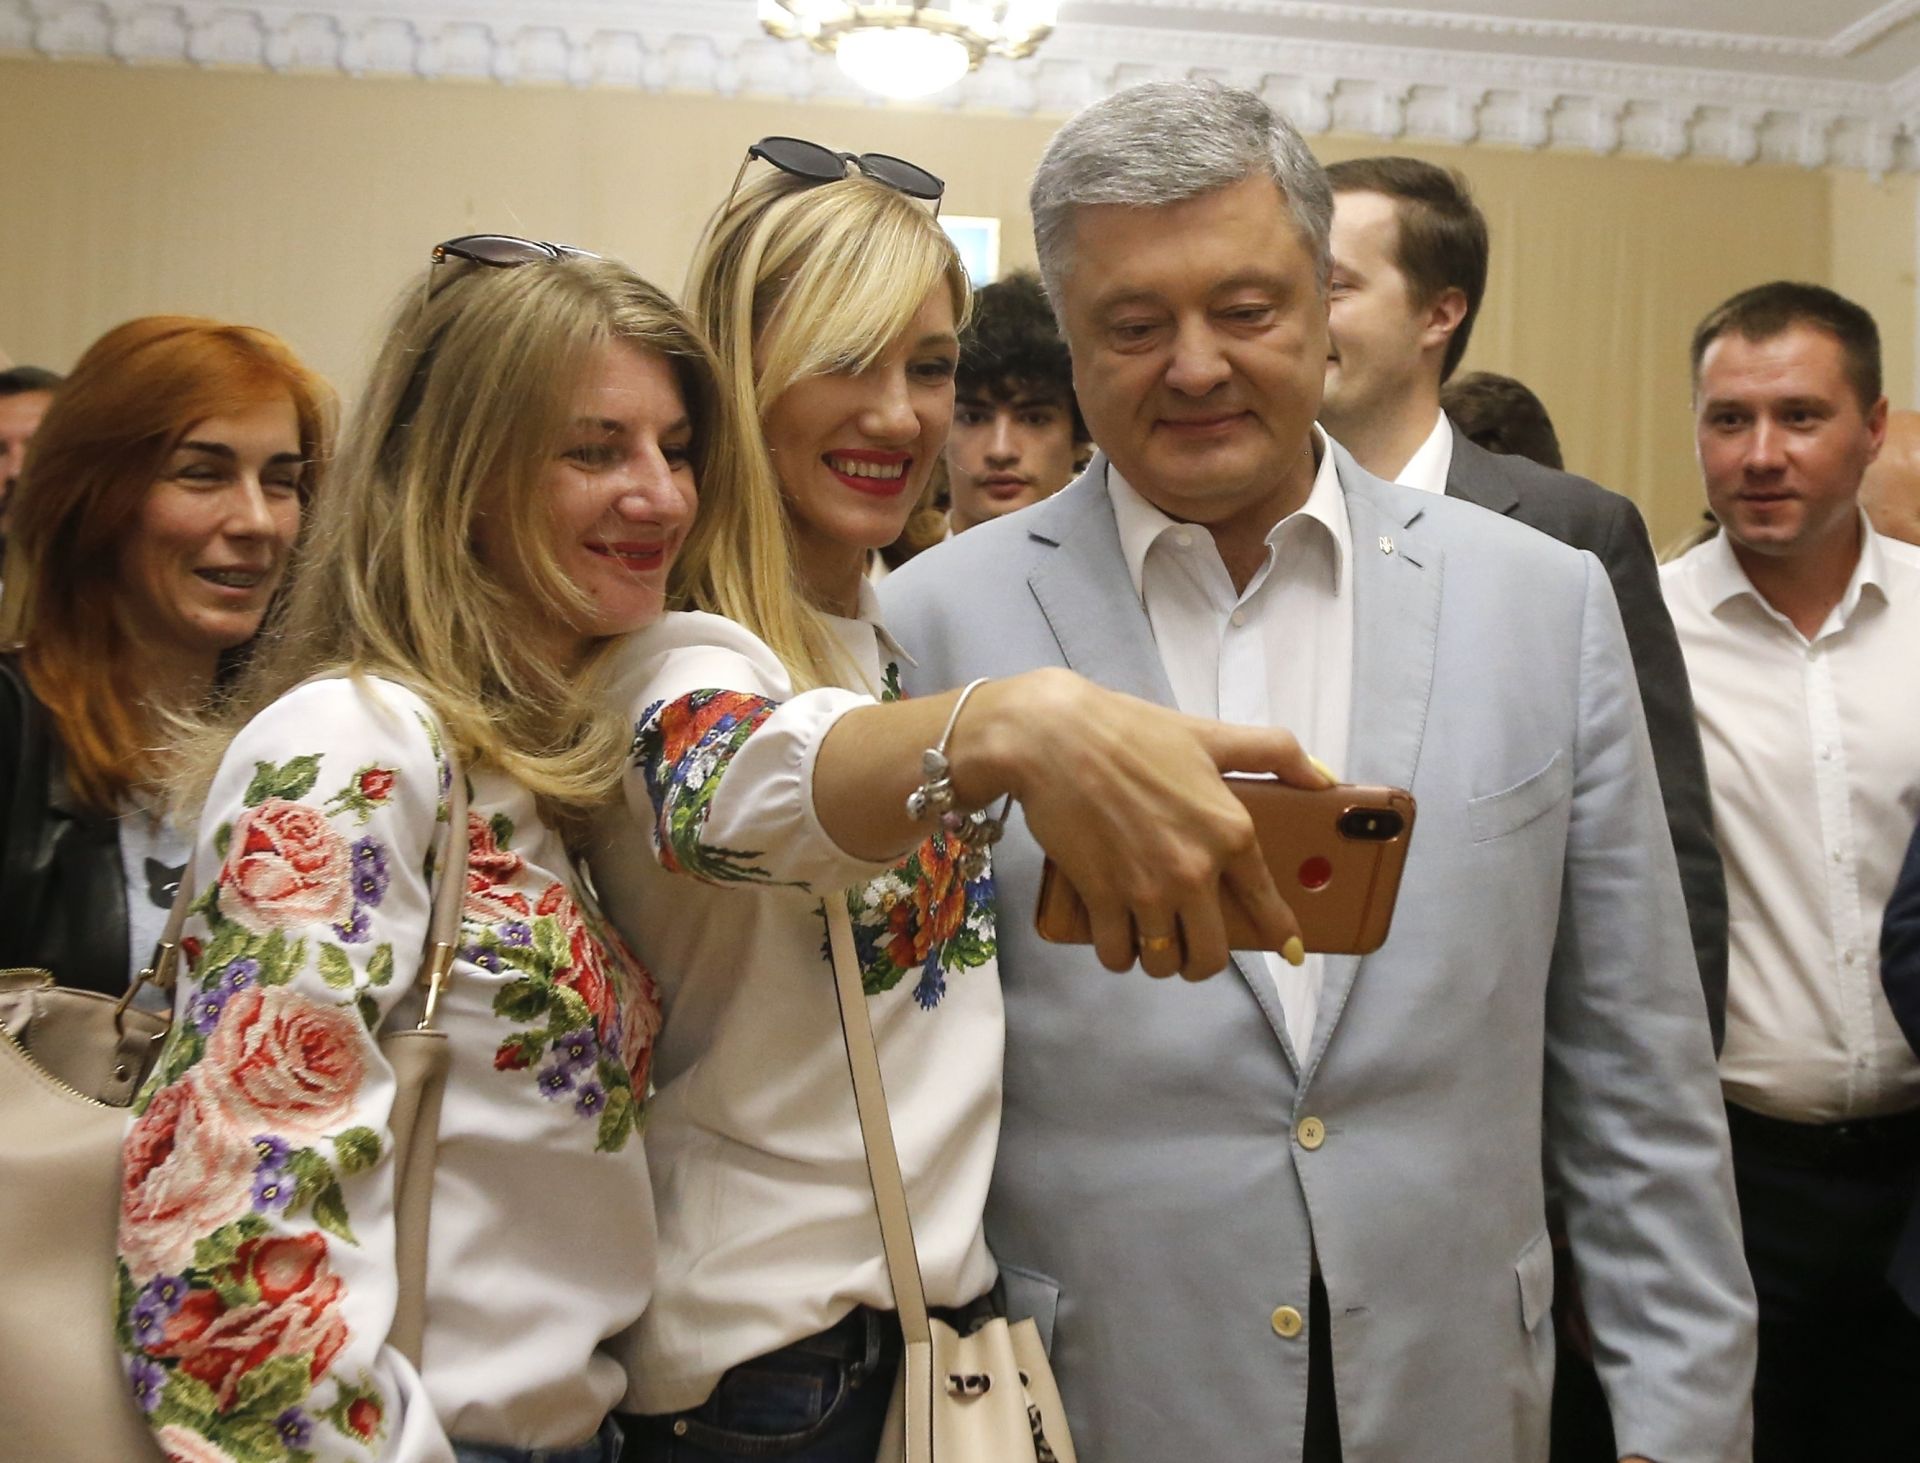 Трета е партията на бившия президент Петро Порошенко "Европейска солидарност" с 8,8 процента